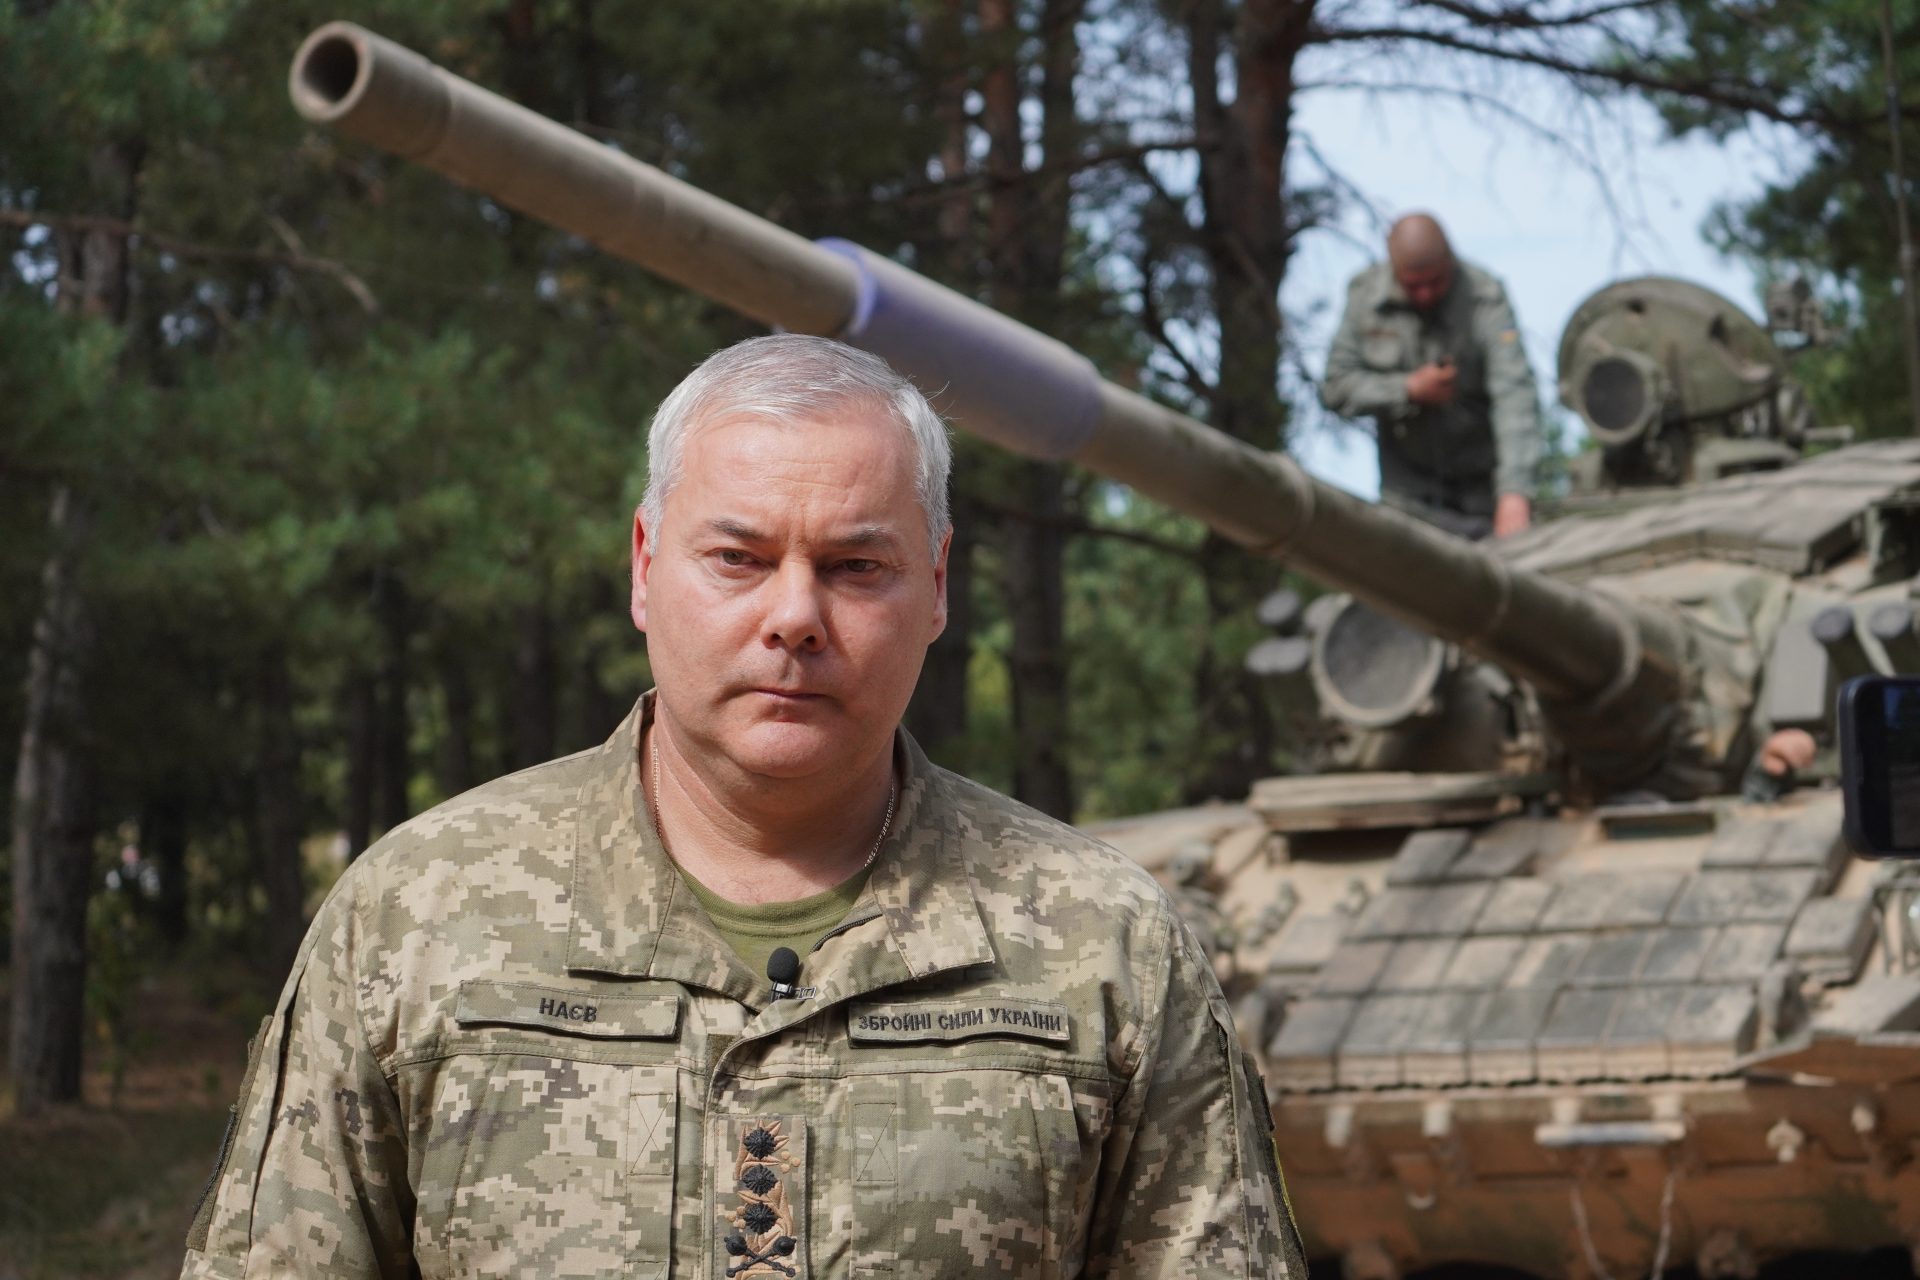 Dieser westliche Panzer, der in der Ukraine eingesetzt wird, ist der beste, um russische Panzer zu vernichten